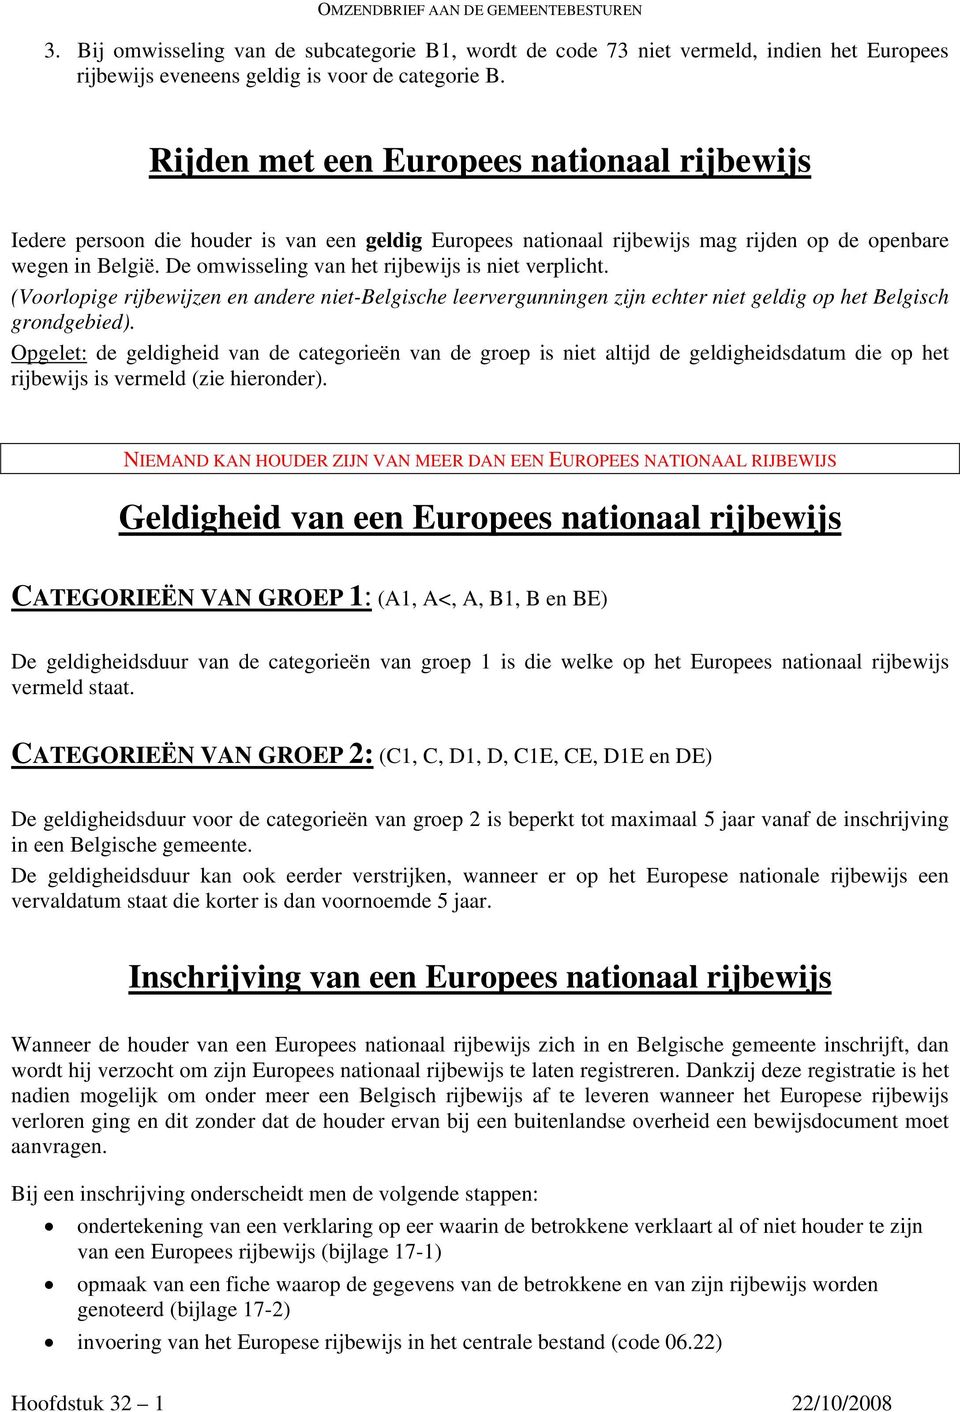 De omwisseling van het rijbewijs is niet verplicht. (Voorlopige rijbewijzen en andere niet-belgische leervergunningen zijn echter niet geldig op het Belgisch grondgebied).